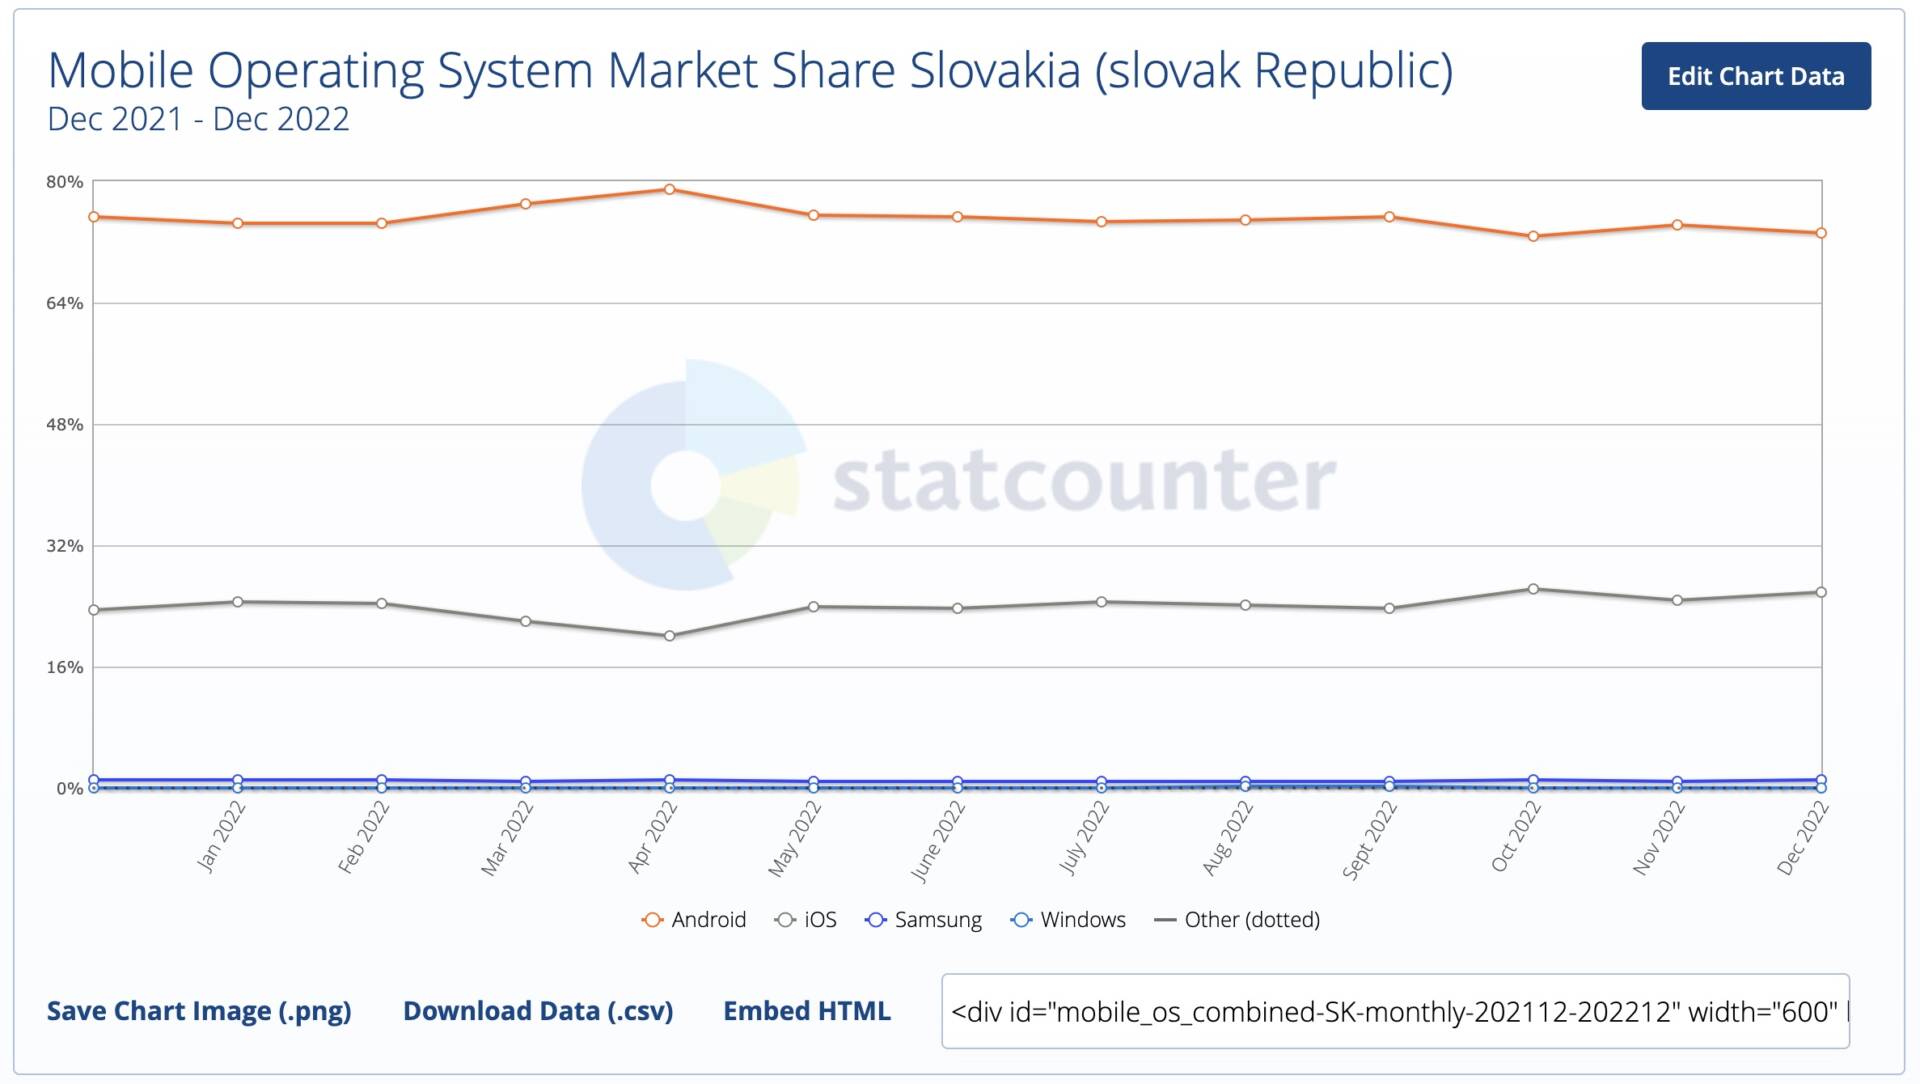 podieľ na slovenskom trhu iOS vs Android